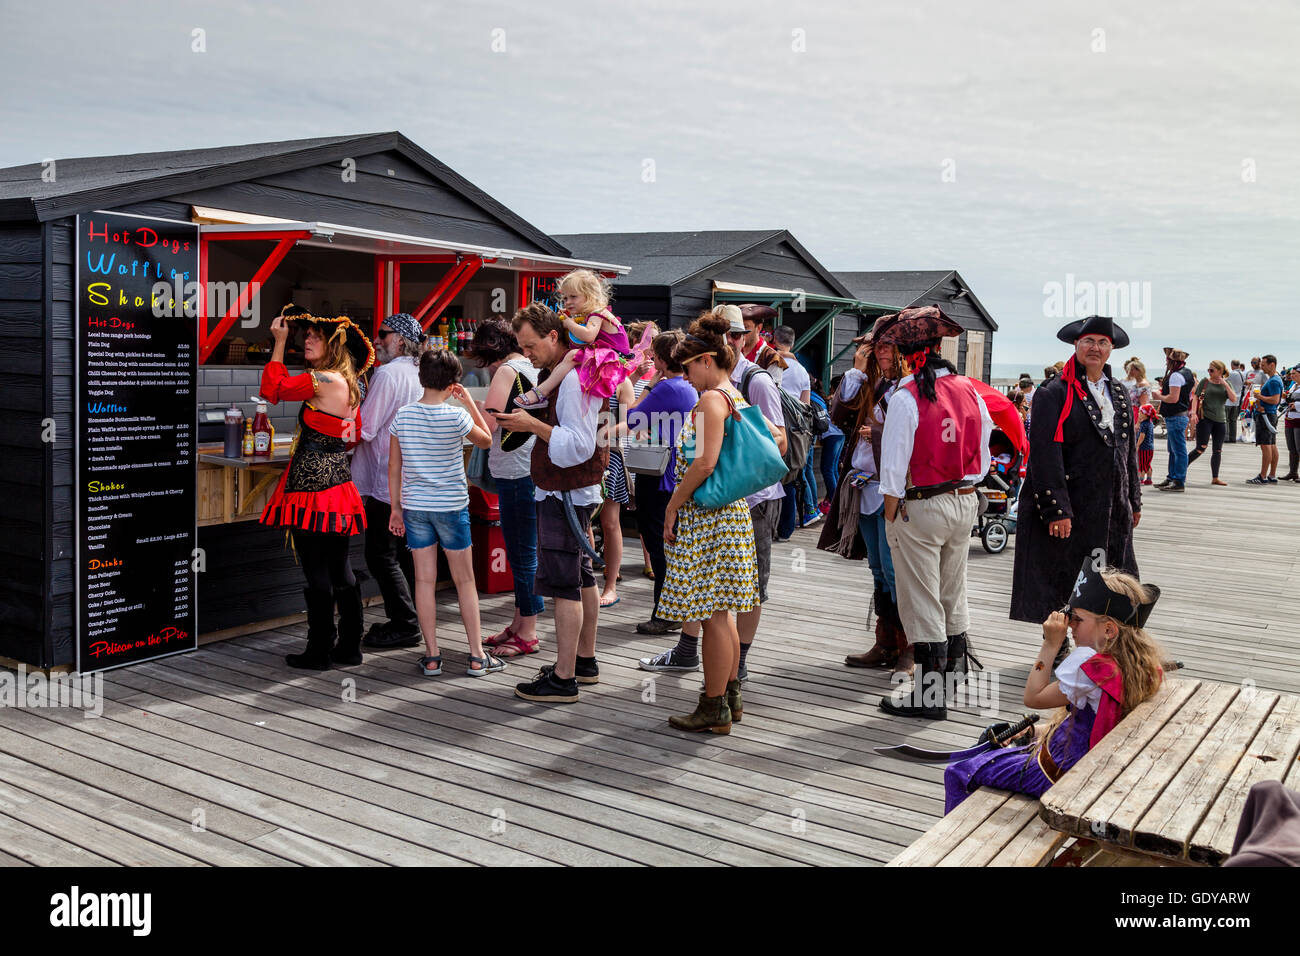 Menschen In Piraten Kostüme Schlange stehen, um Essen auf Hastings Pier in  Hastings Pirate Day Festival, Hastings, Sussex, UK zu kaufen  Stockfotografie - Alamy